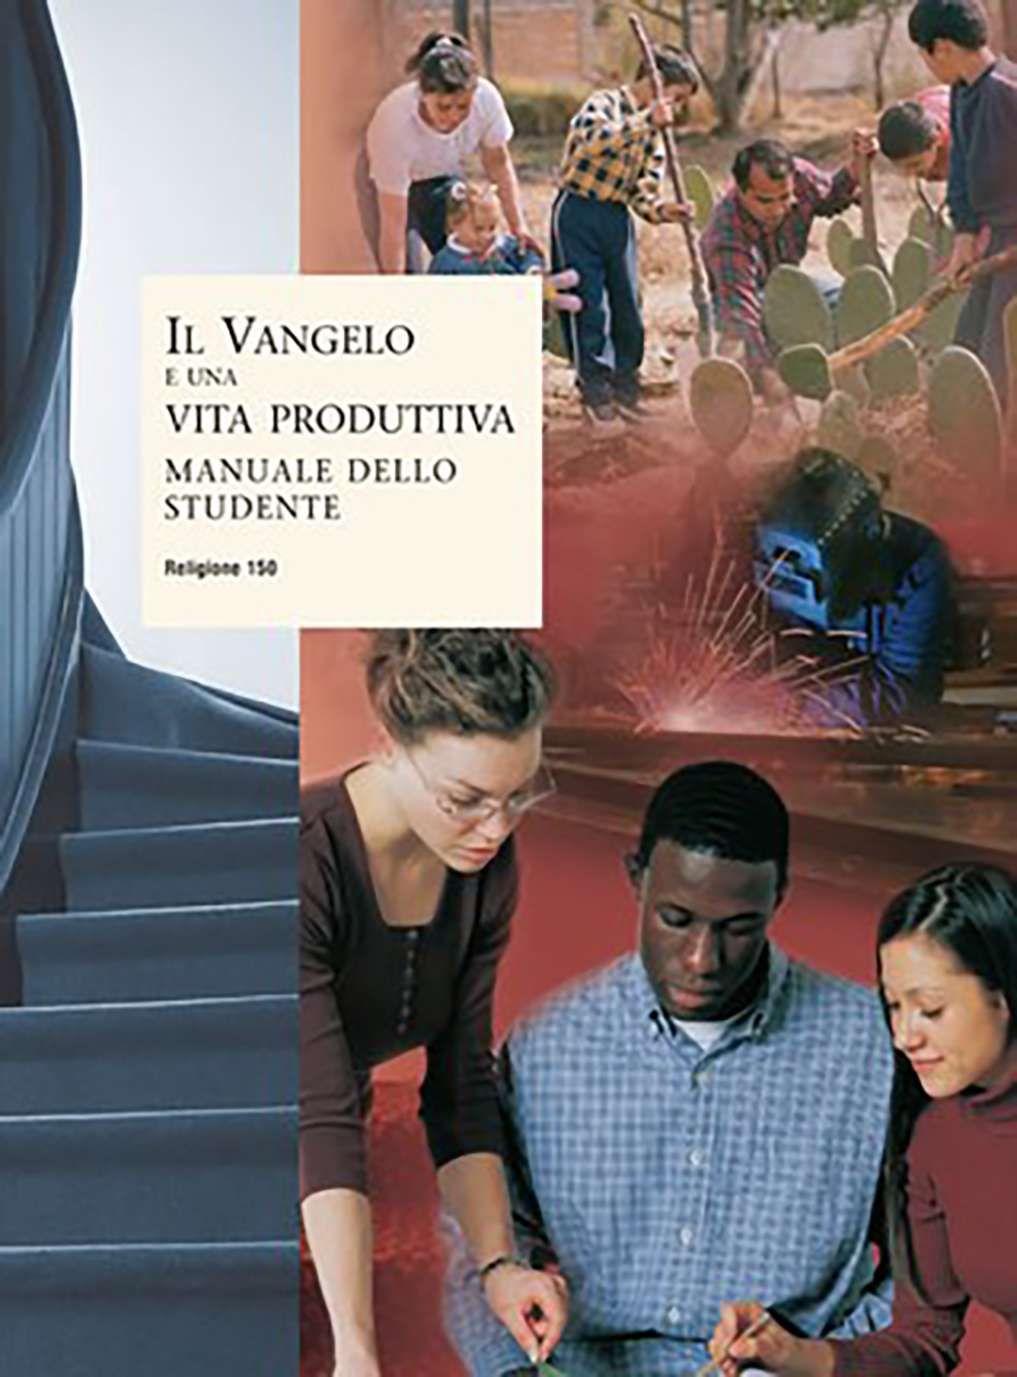 Il Vangelo e una vita produttiva – Manuale dello studente (Religione 150)